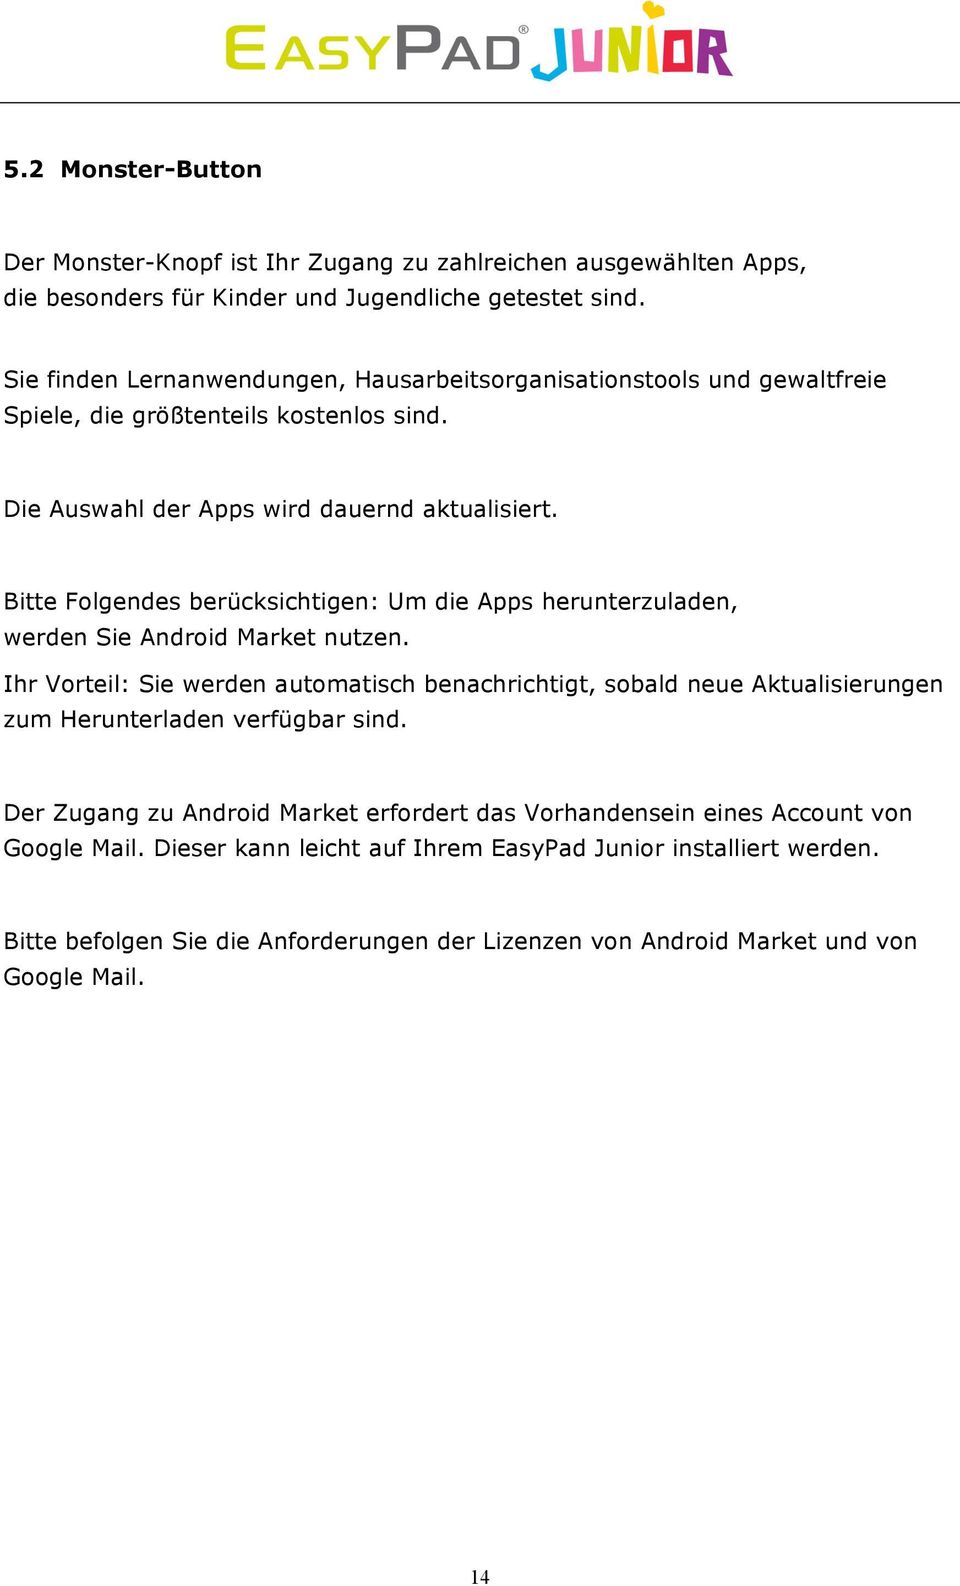 Bitte Folgendes berücksichtigen: Um die Apps herunterzuladen, werden Sie Android Market nutzen.